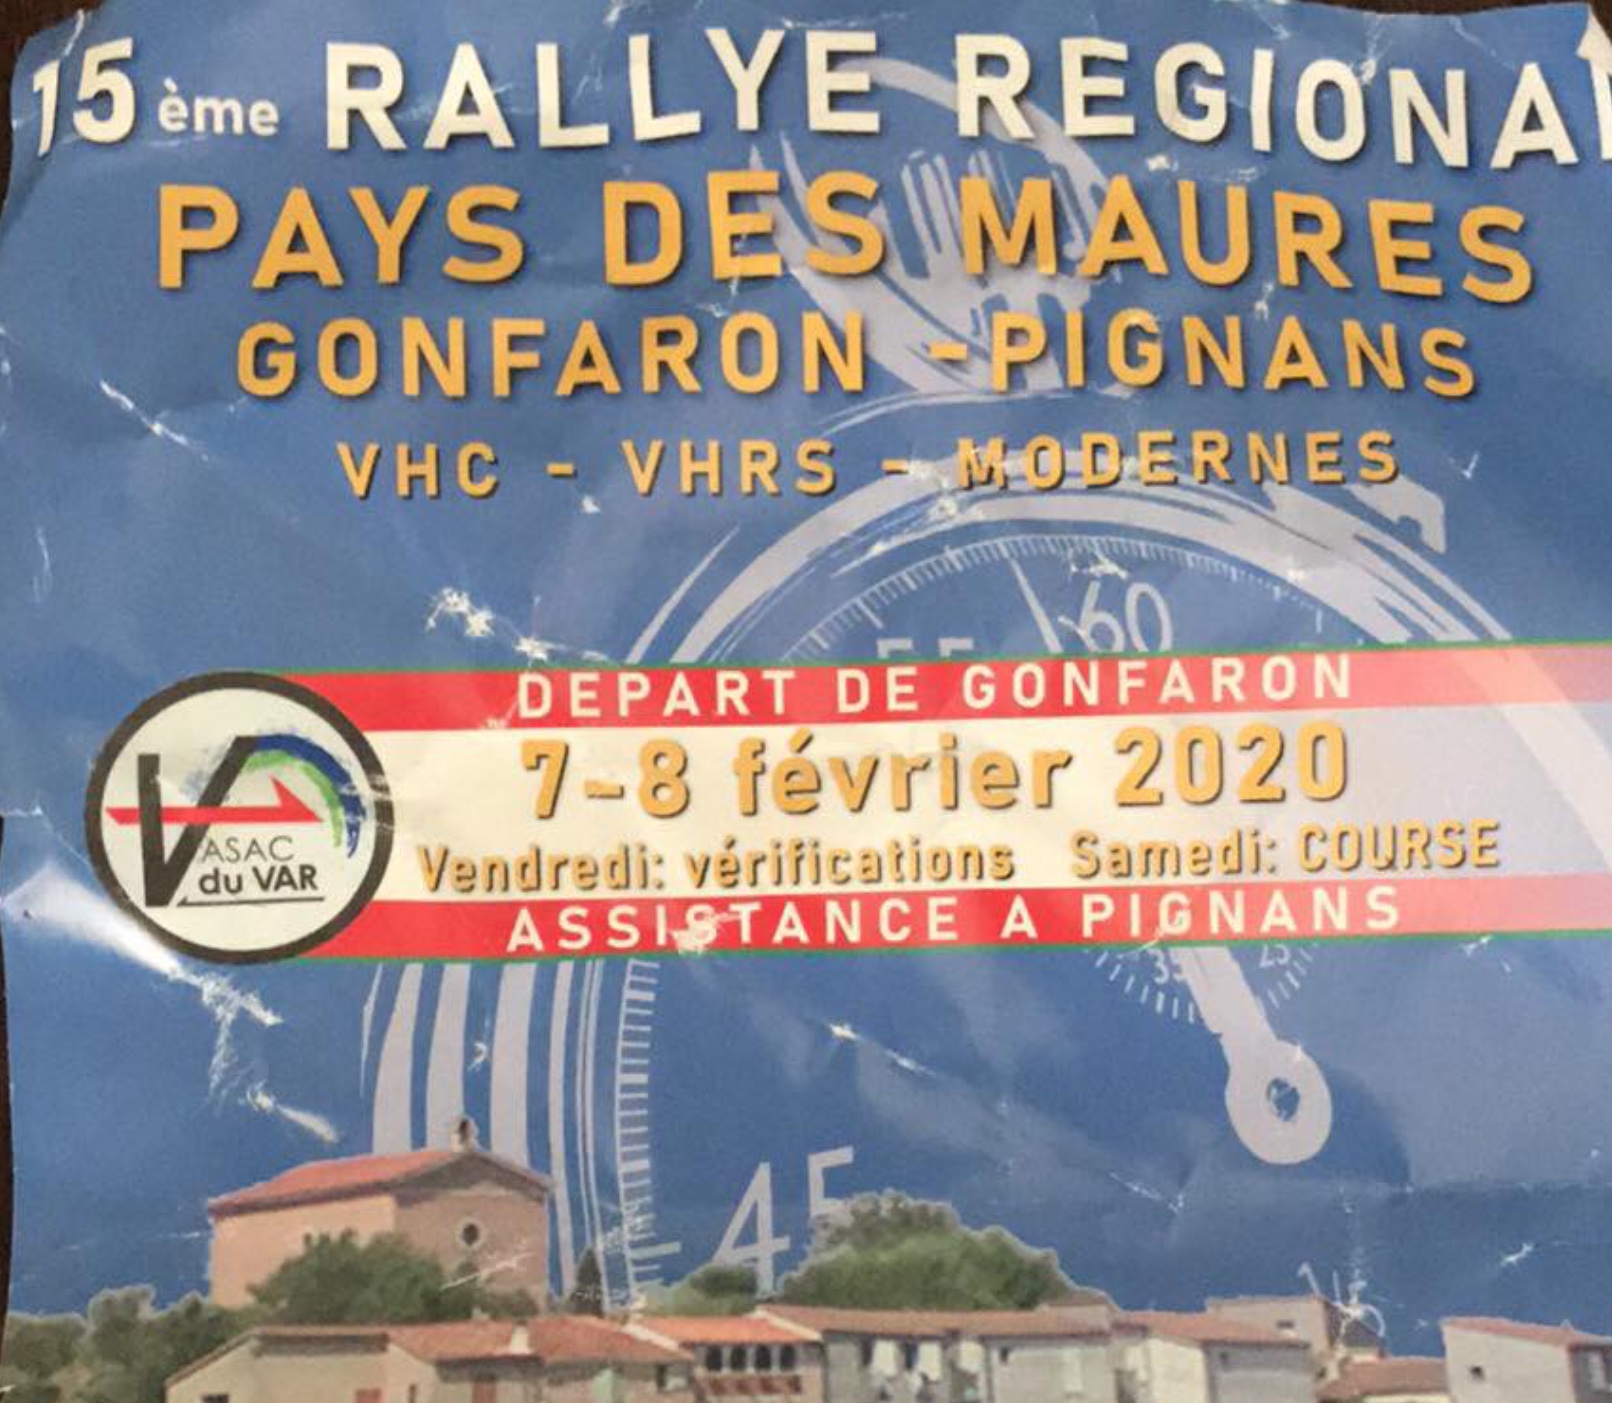 Rallye Pays des Maures – Gonfaron Pignans